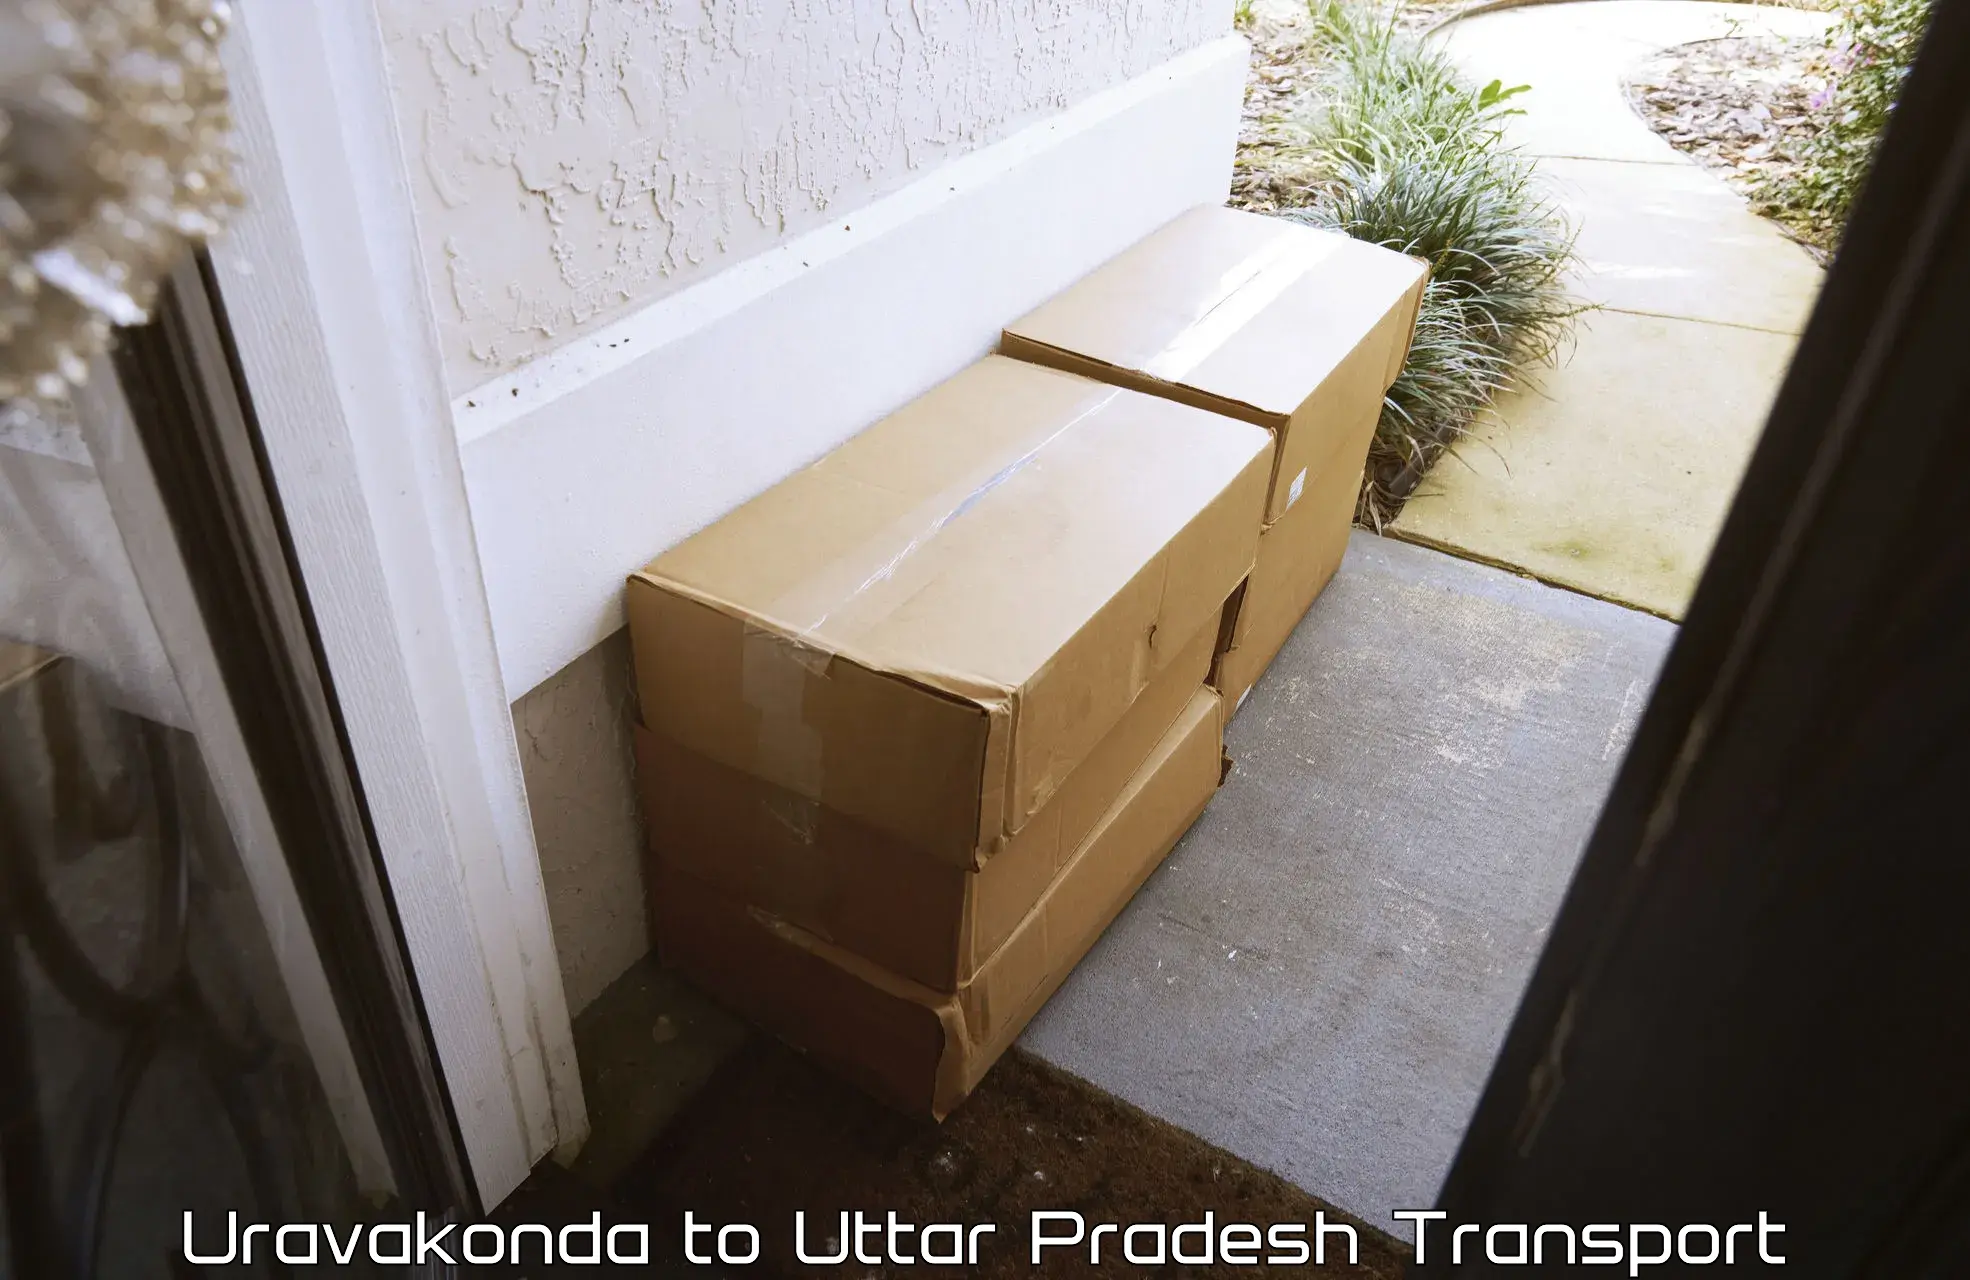 Goods delivery service Uravakonda to Salon Raebareli